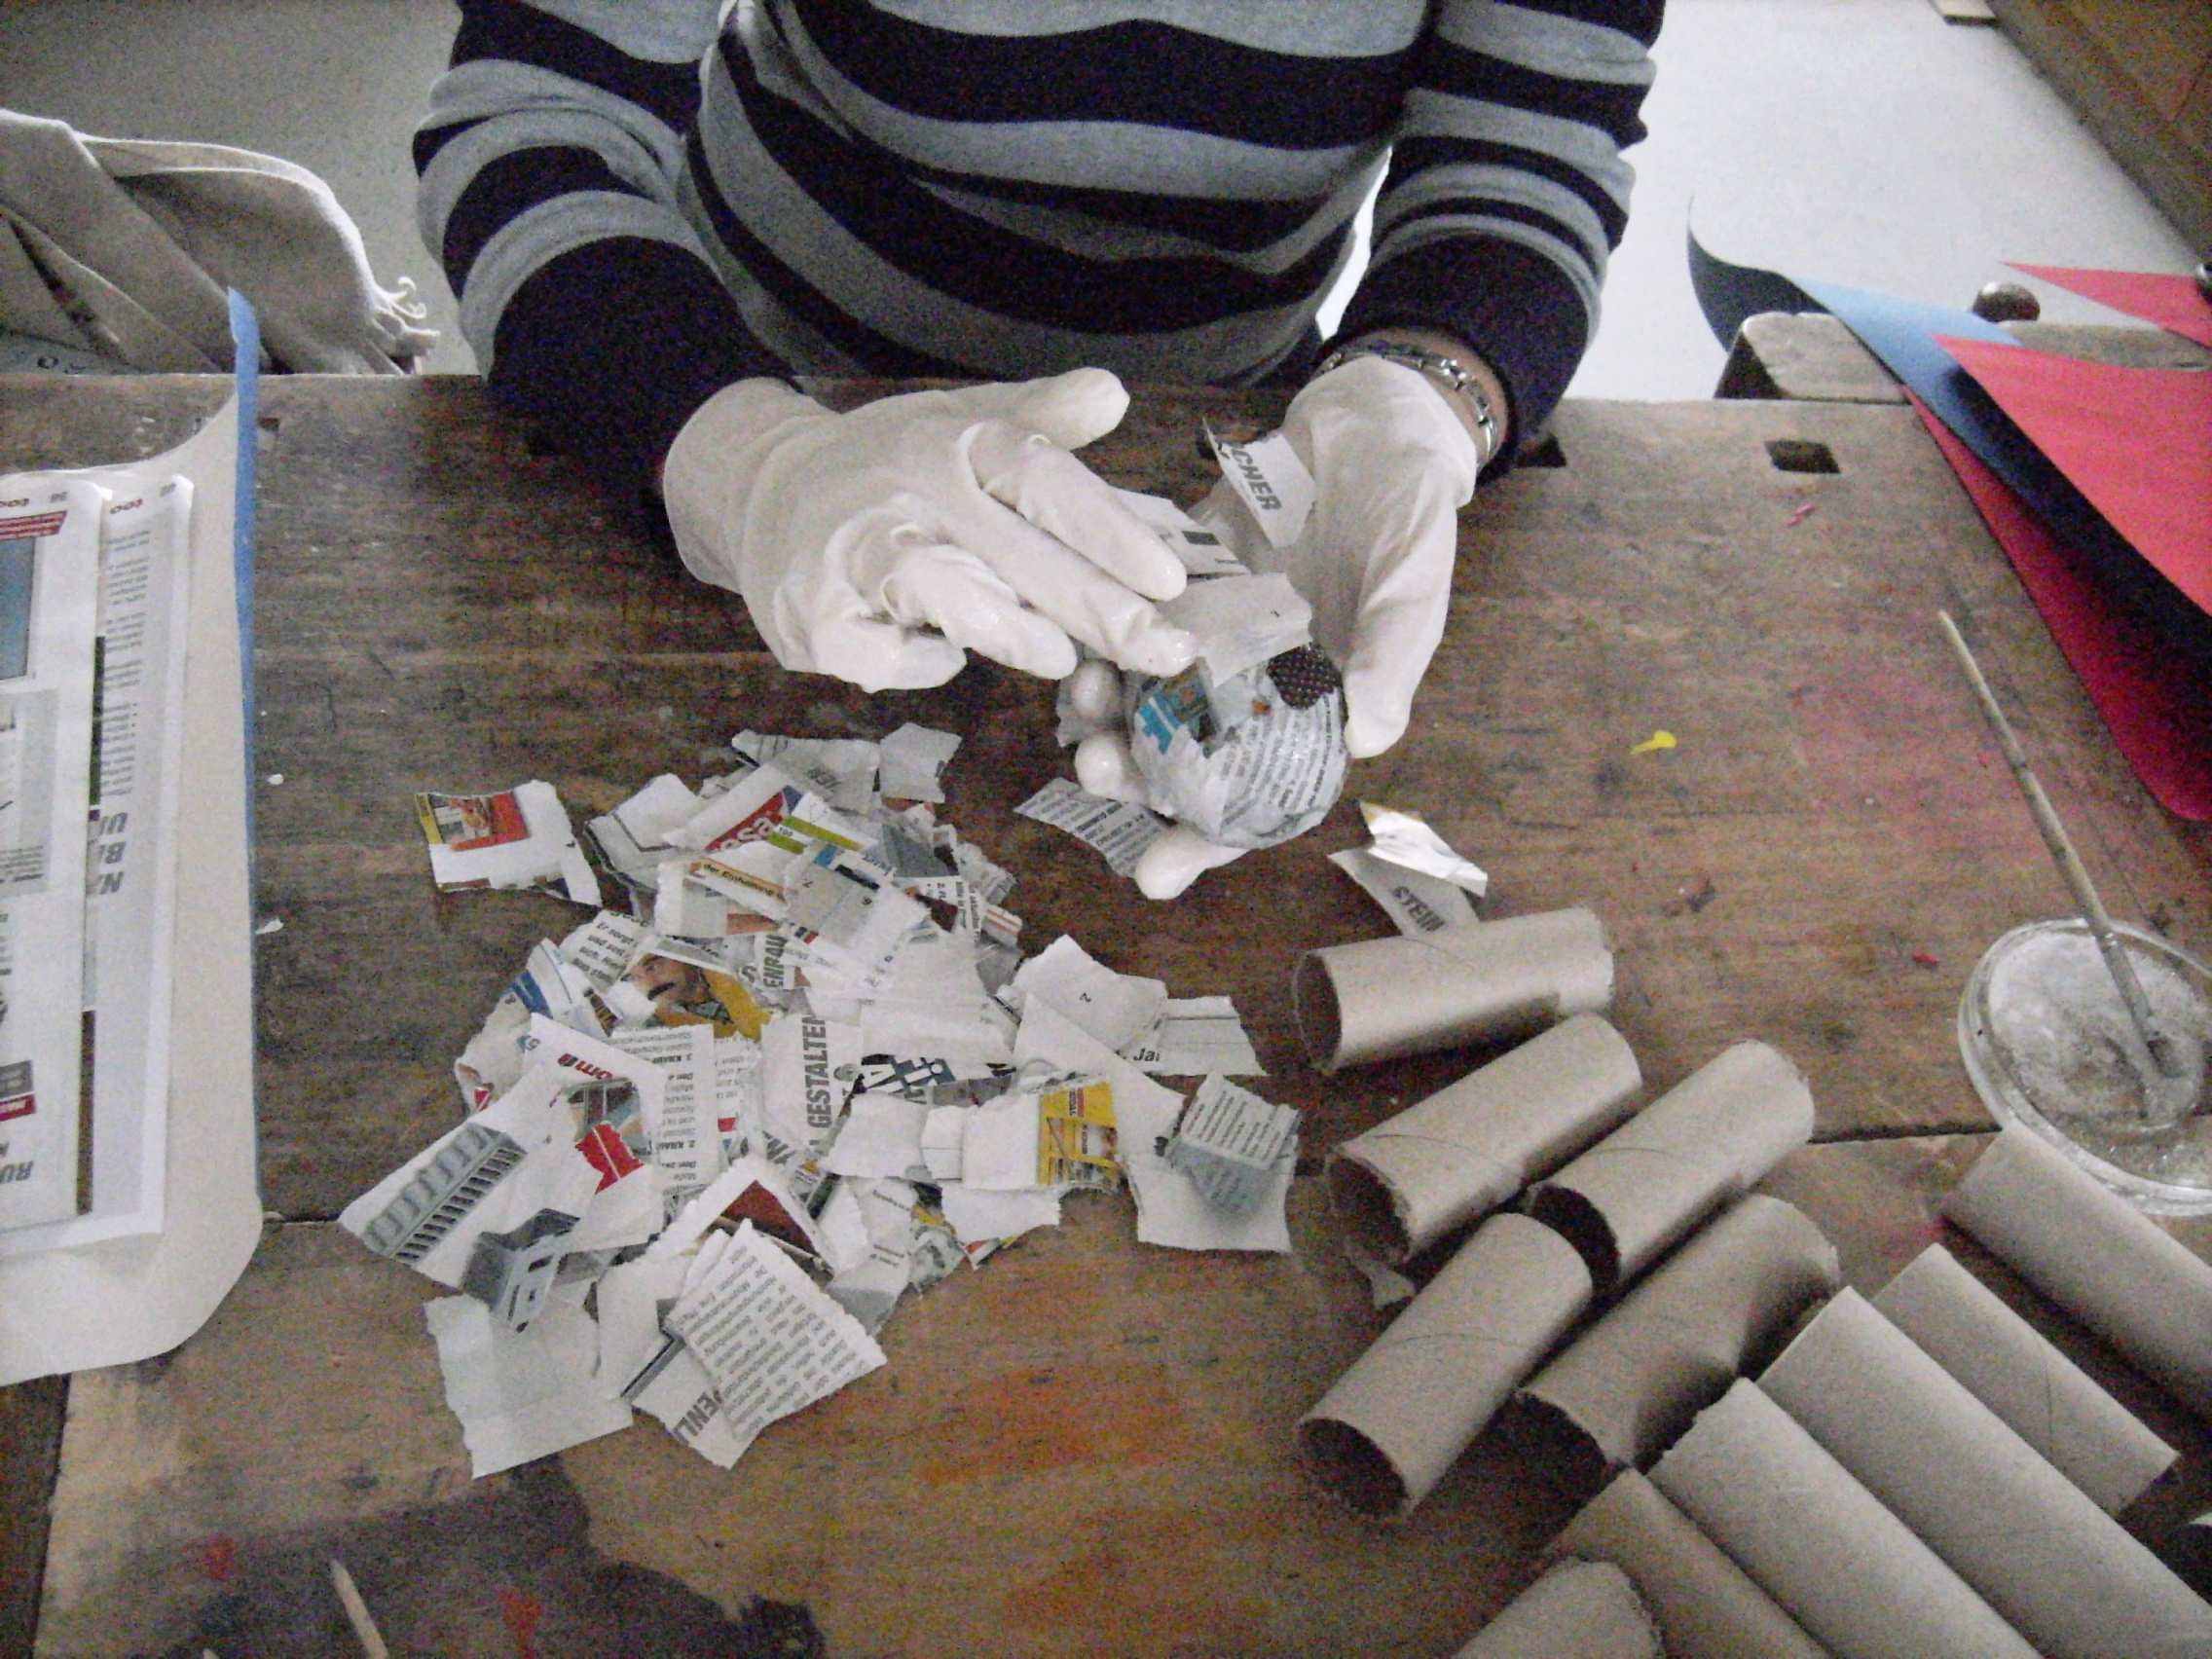 Wir bauen eine Rassel Material: - Glühbirne Kleister Zeitung/Zeitschriften Handschuhe Transparentpapier Hammer Zeitung/Zeitschriften in kleine Stücke zerreißen.